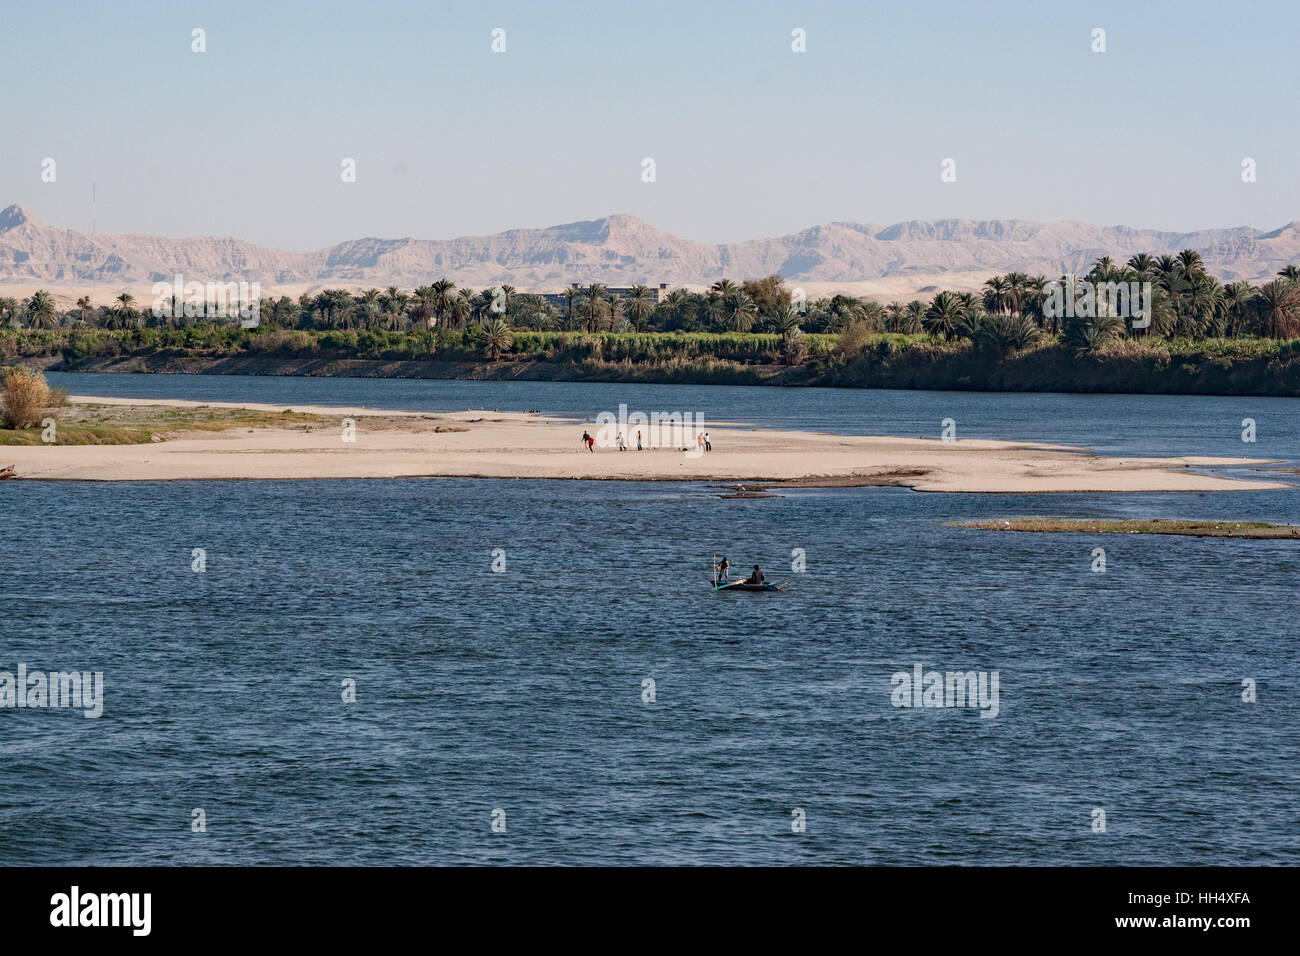 Croisières le long du Nil en Egypte voir les gens vivre leur vie quotidienne. Ici, les hommes pêchent et jouer au soccer. Banque D'Images